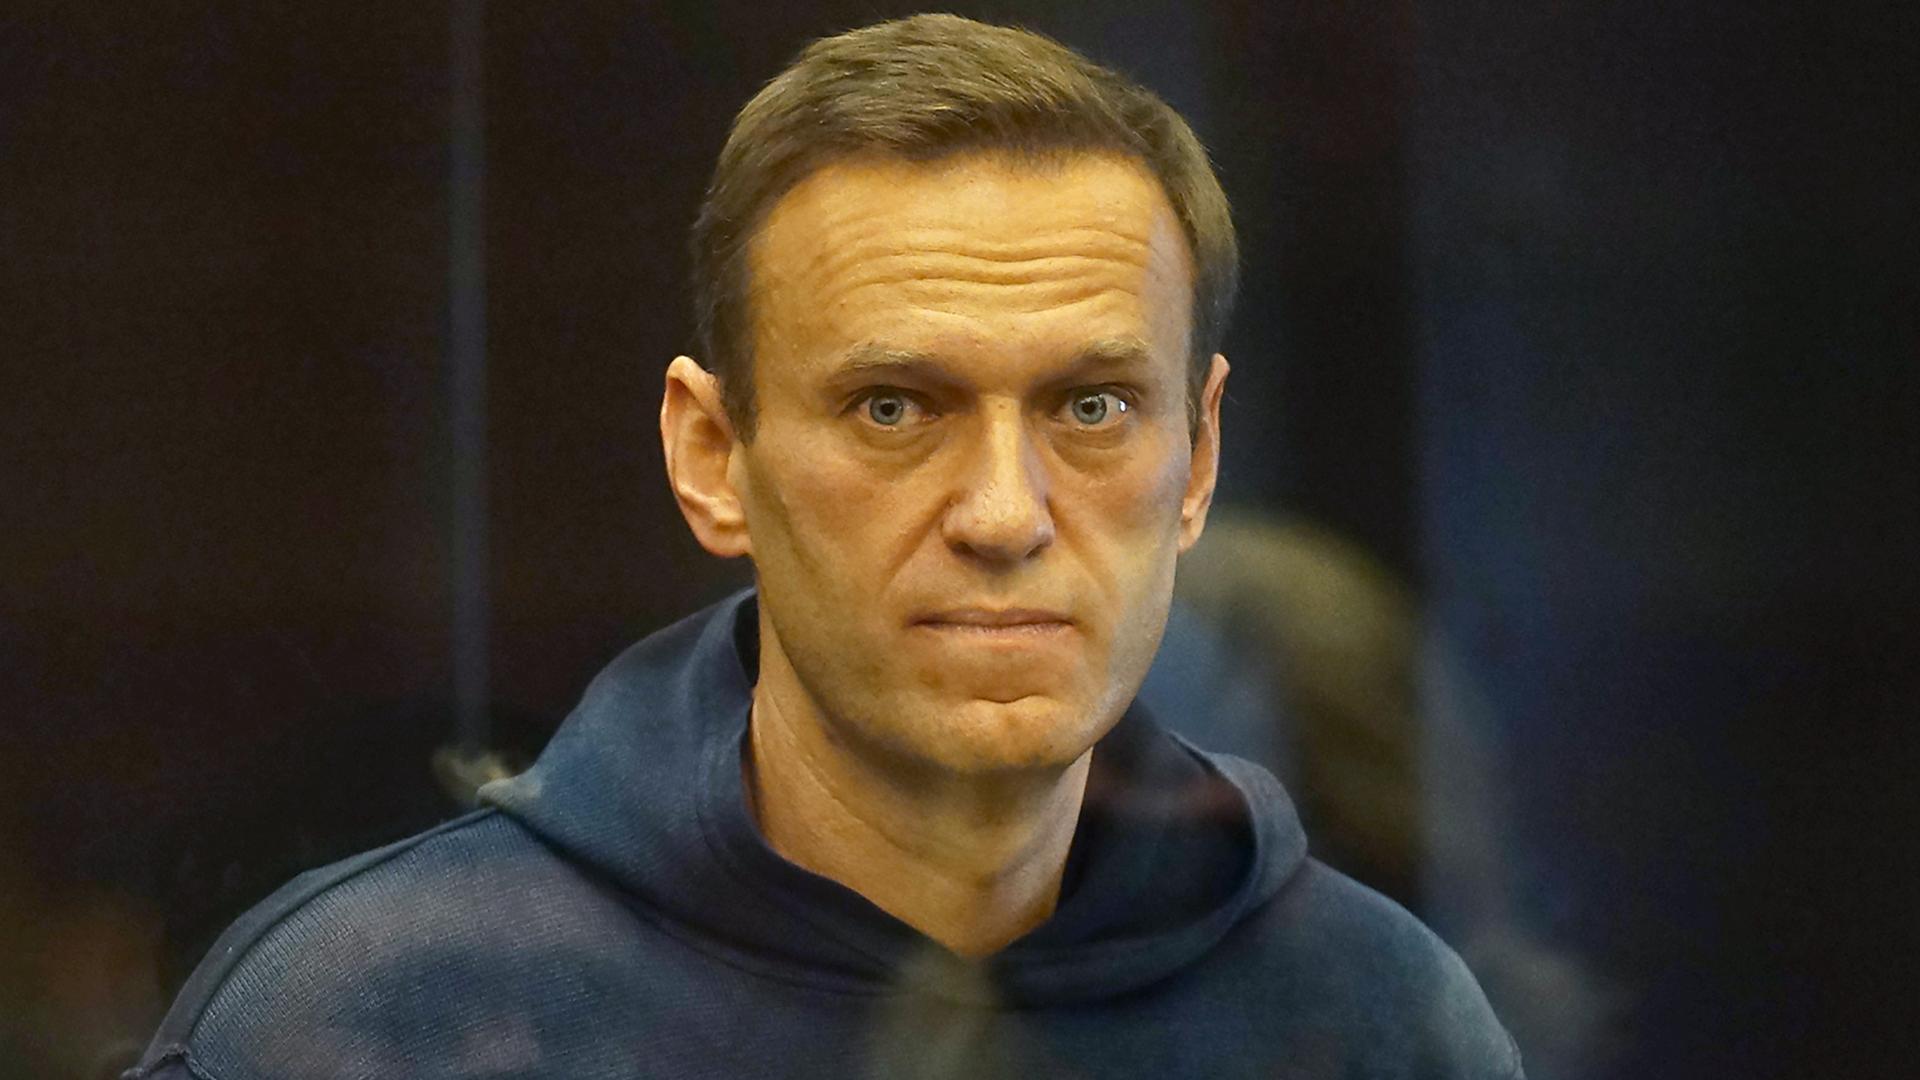 Russland - Gericht bestätigt Haftstrafe von Nawalny